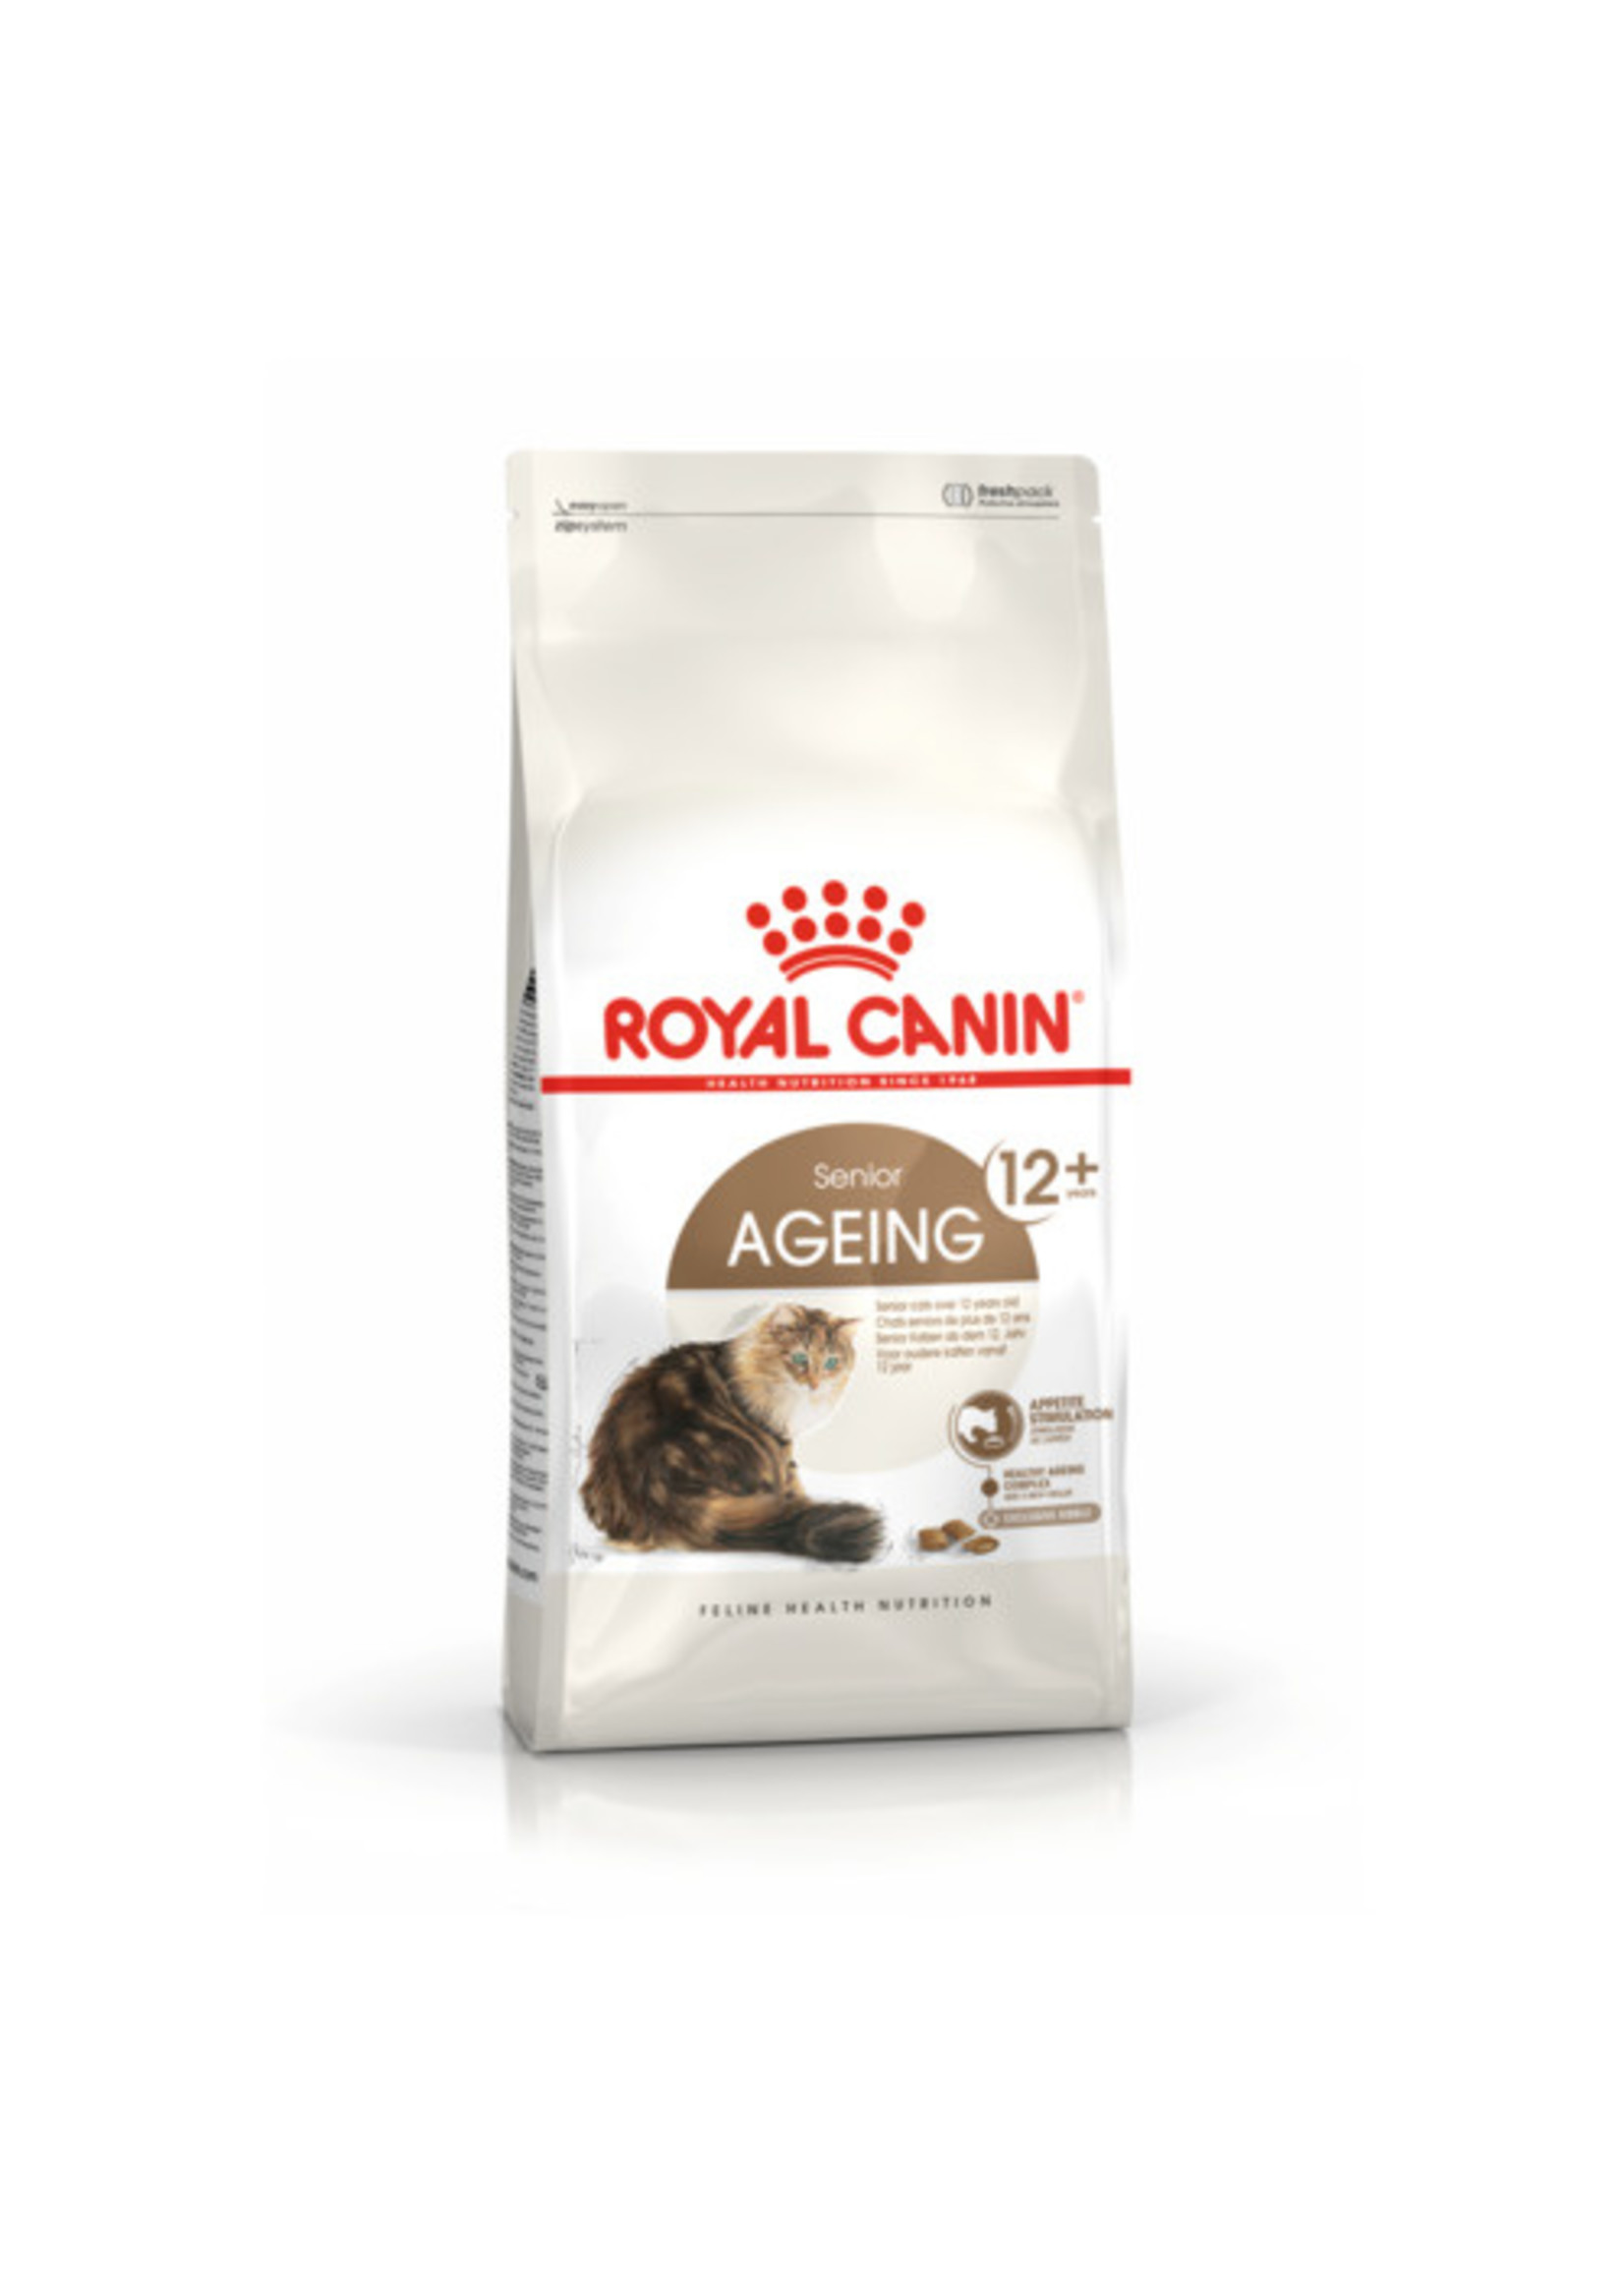 Royal canin Voor de oude kat, Ageing 12+ 4kg